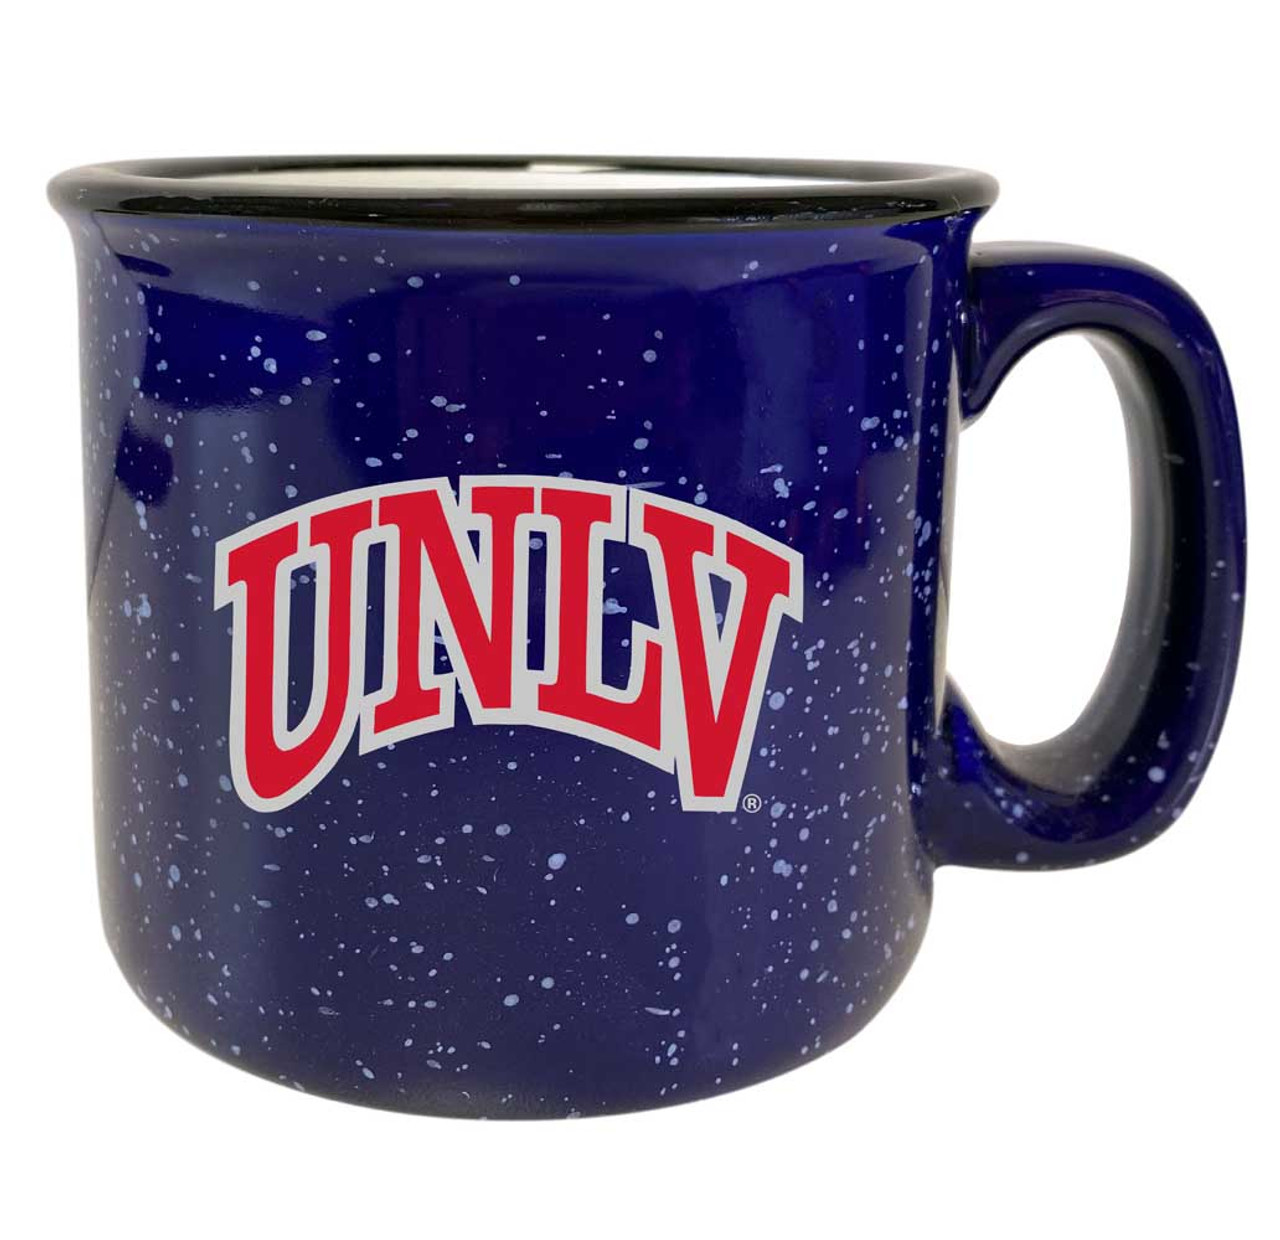 UNLV Rebels Speckled Ceramic Camper Coffee Mug (Choose Your Color).